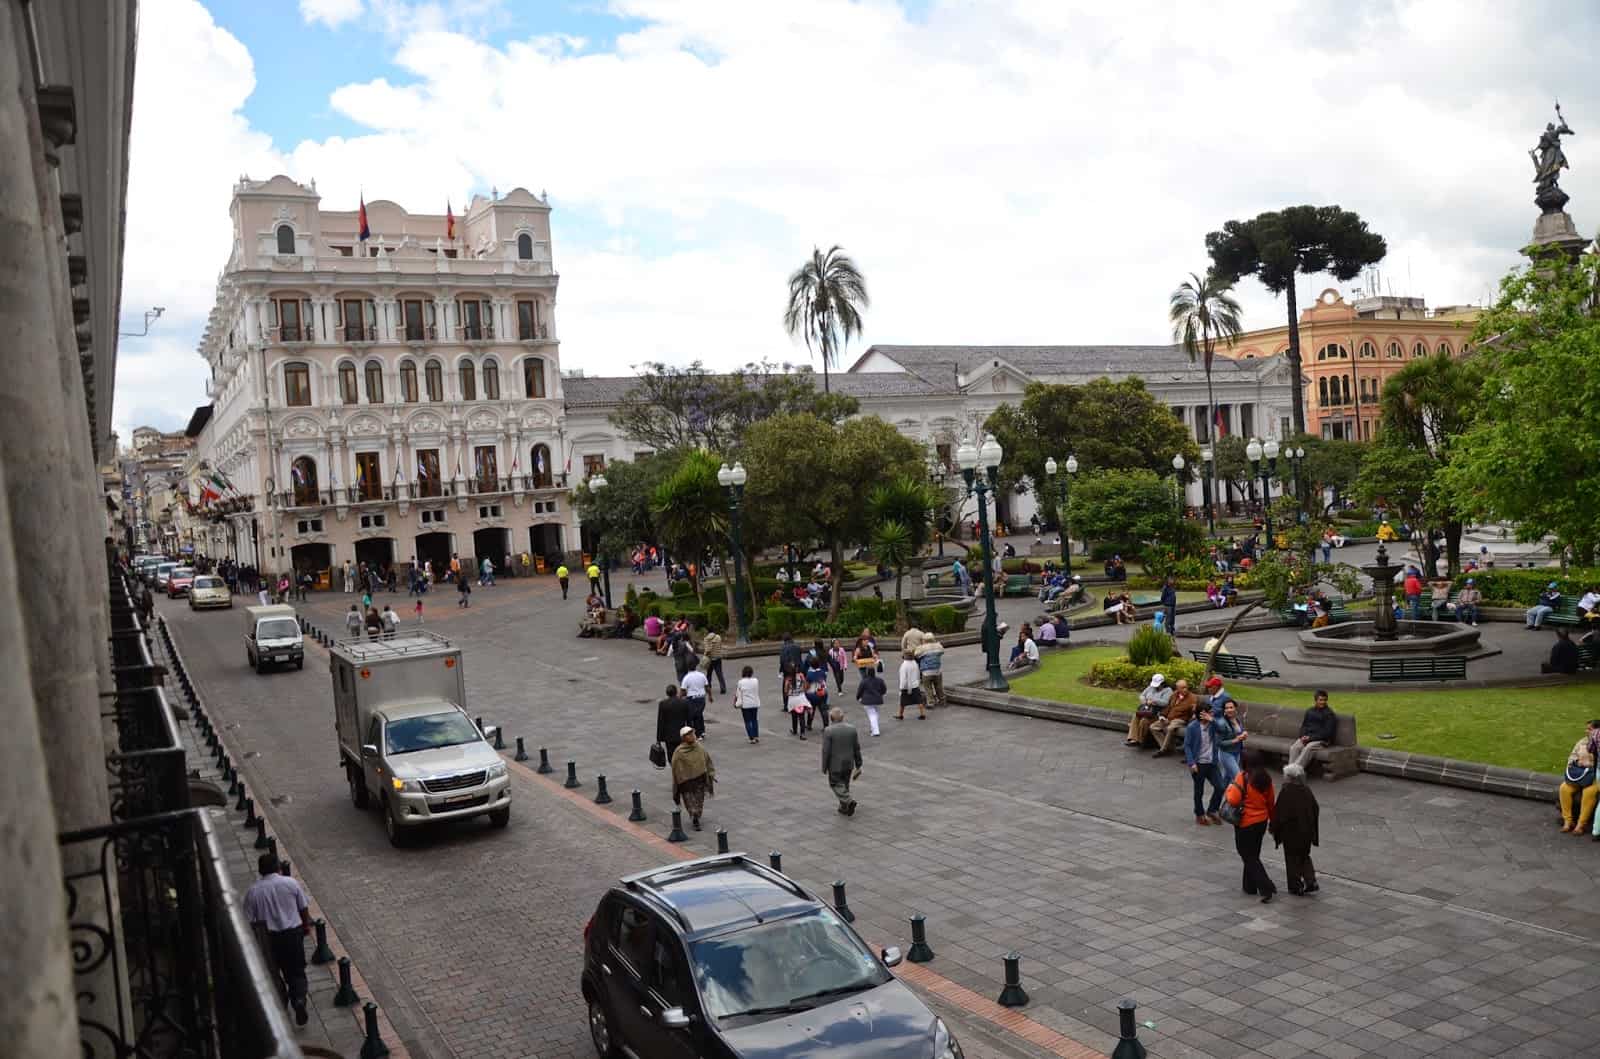 Hotel Plaza Grande (left) on Plaza Grande in Quito, Ecuador